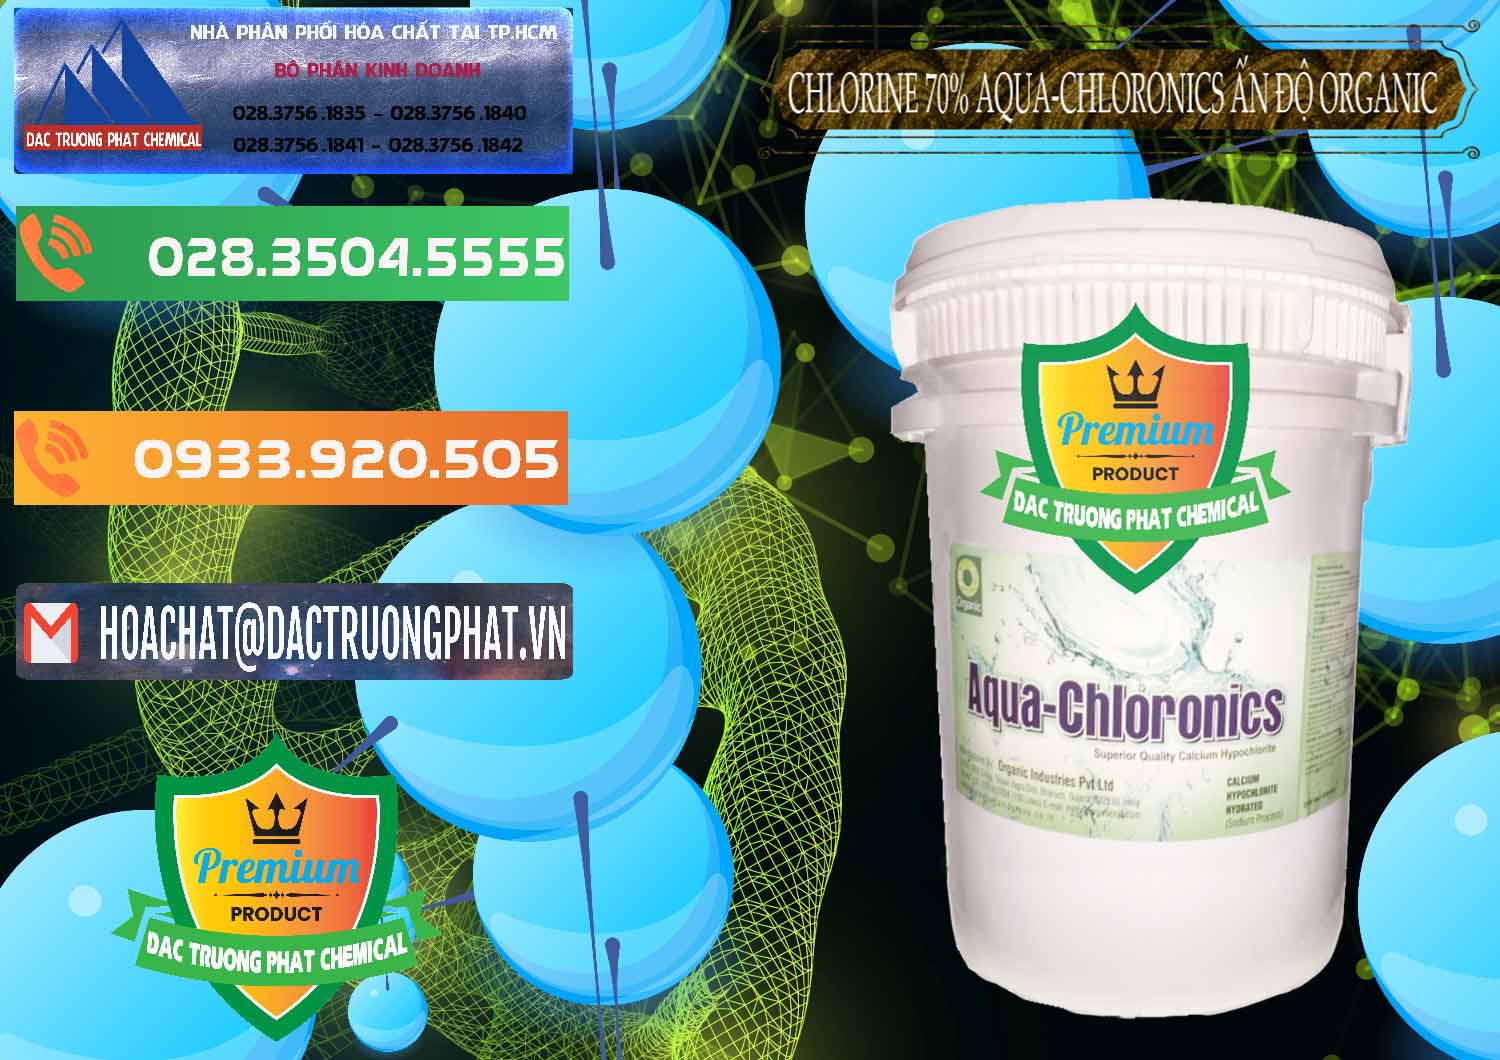 Nơi chuyên bán ( phân phối ) Chlorine – Clorin 70% Aqua-Chloronics Ấn Độ Organic India - 0211 - Cung cấp hóa chất tại TP.HCM - hoachatxulynuoc.com.vn